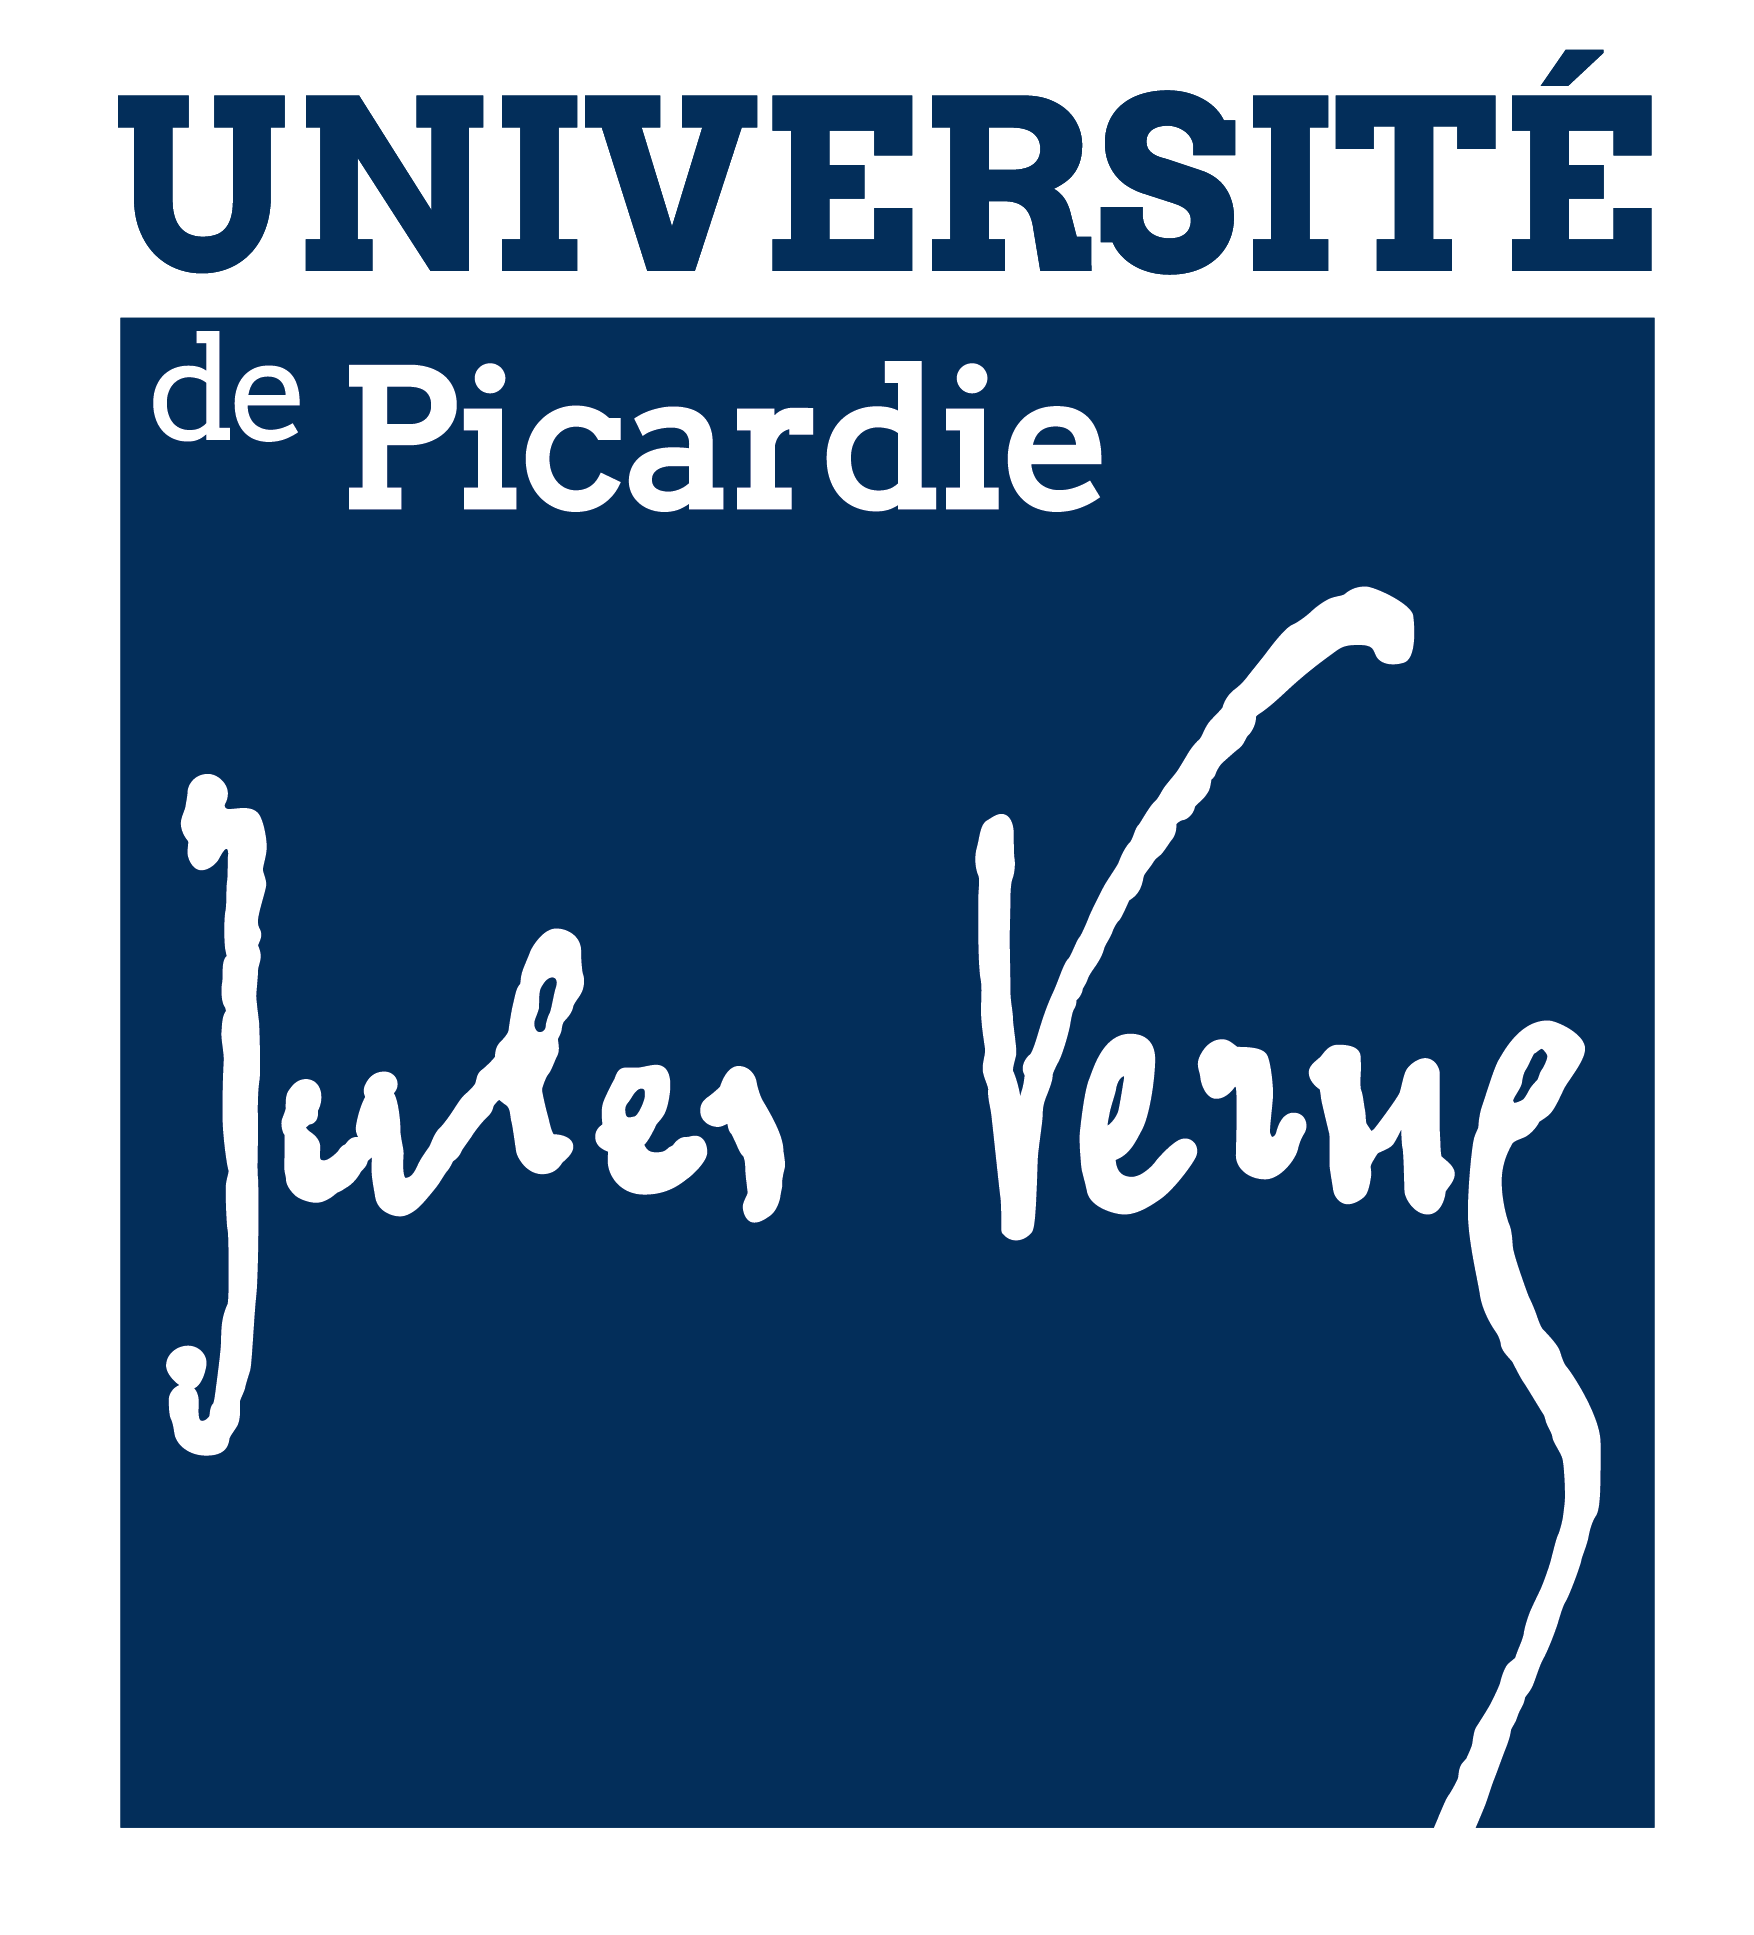 logo-univ-picardie